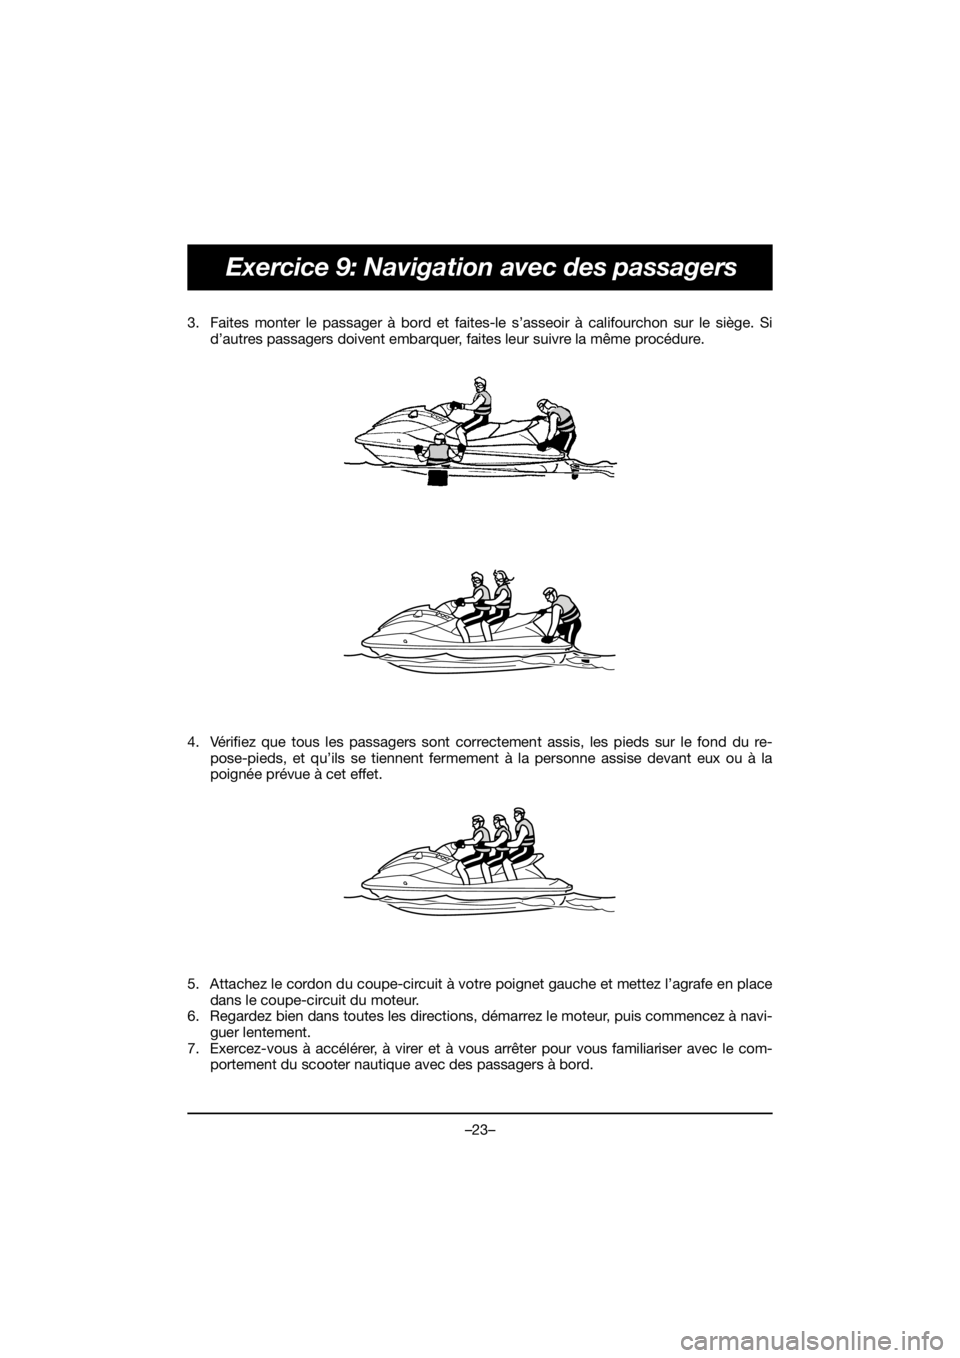 YAMAHA VX LIMITED HO 2021  Betriebsanleitungen (in German) –23–
Exercice 9: Navigation avec des passagers
3. Faites monter le passager à bord et faites-le s’asseoir à califourchon sur le siège. Sid’autres passagers doivent embarquer, faites leur su